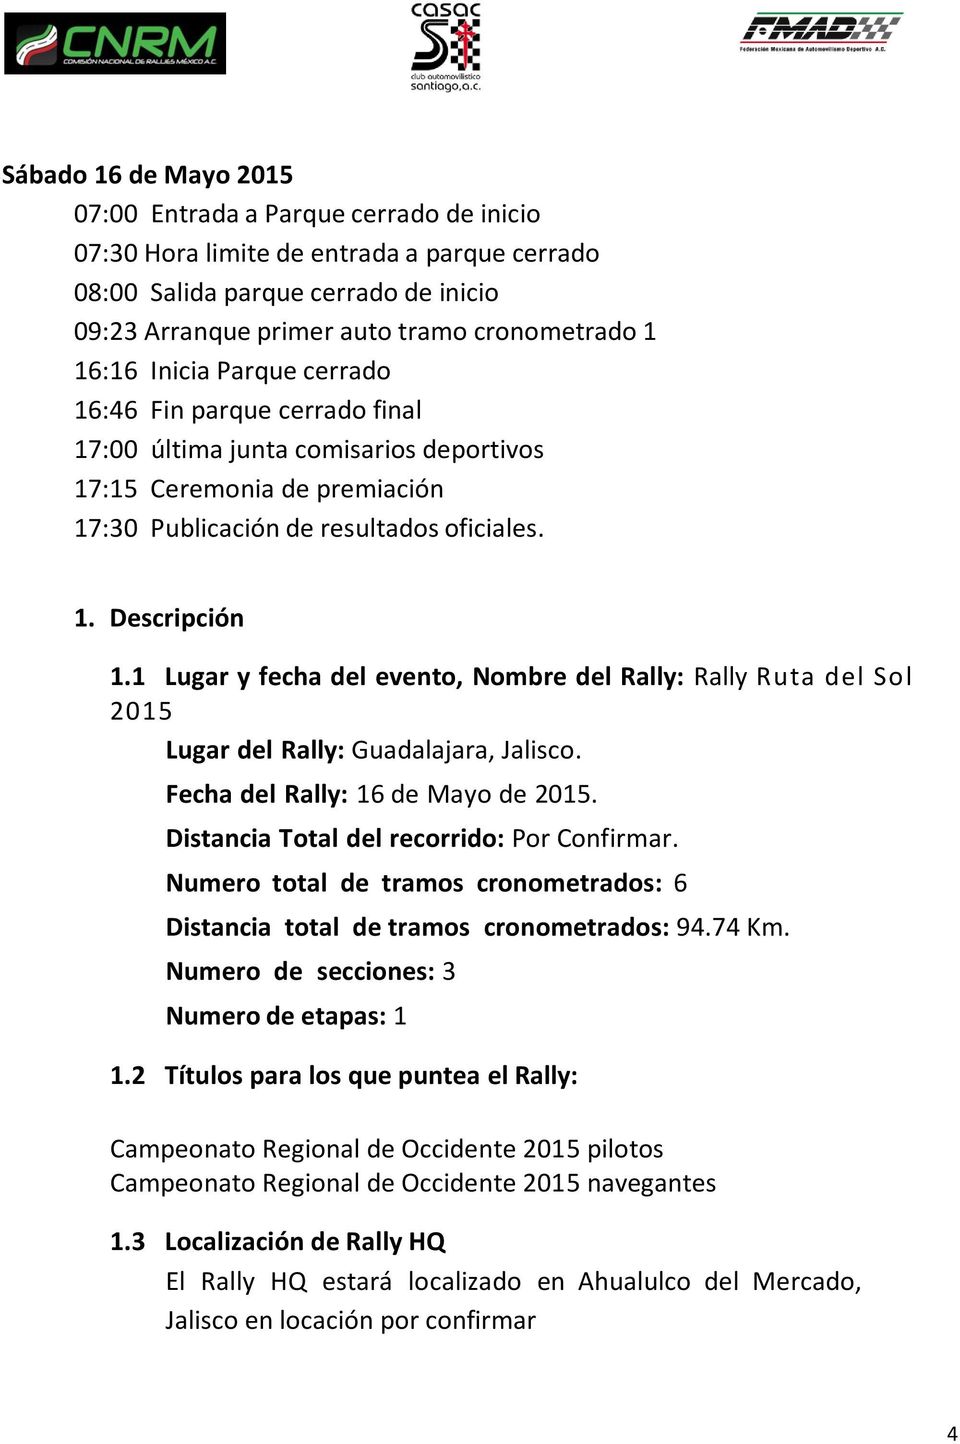 1 Lugar y fecha del evento, Nombre del Rally: Rally Ruta del Sol 2015 Lugar del Rally: Guadalajara, Jalisco. Fecha del Rally: 16 de Mayo de 2015. Distancia Total del recorrido: Por Confirmar.